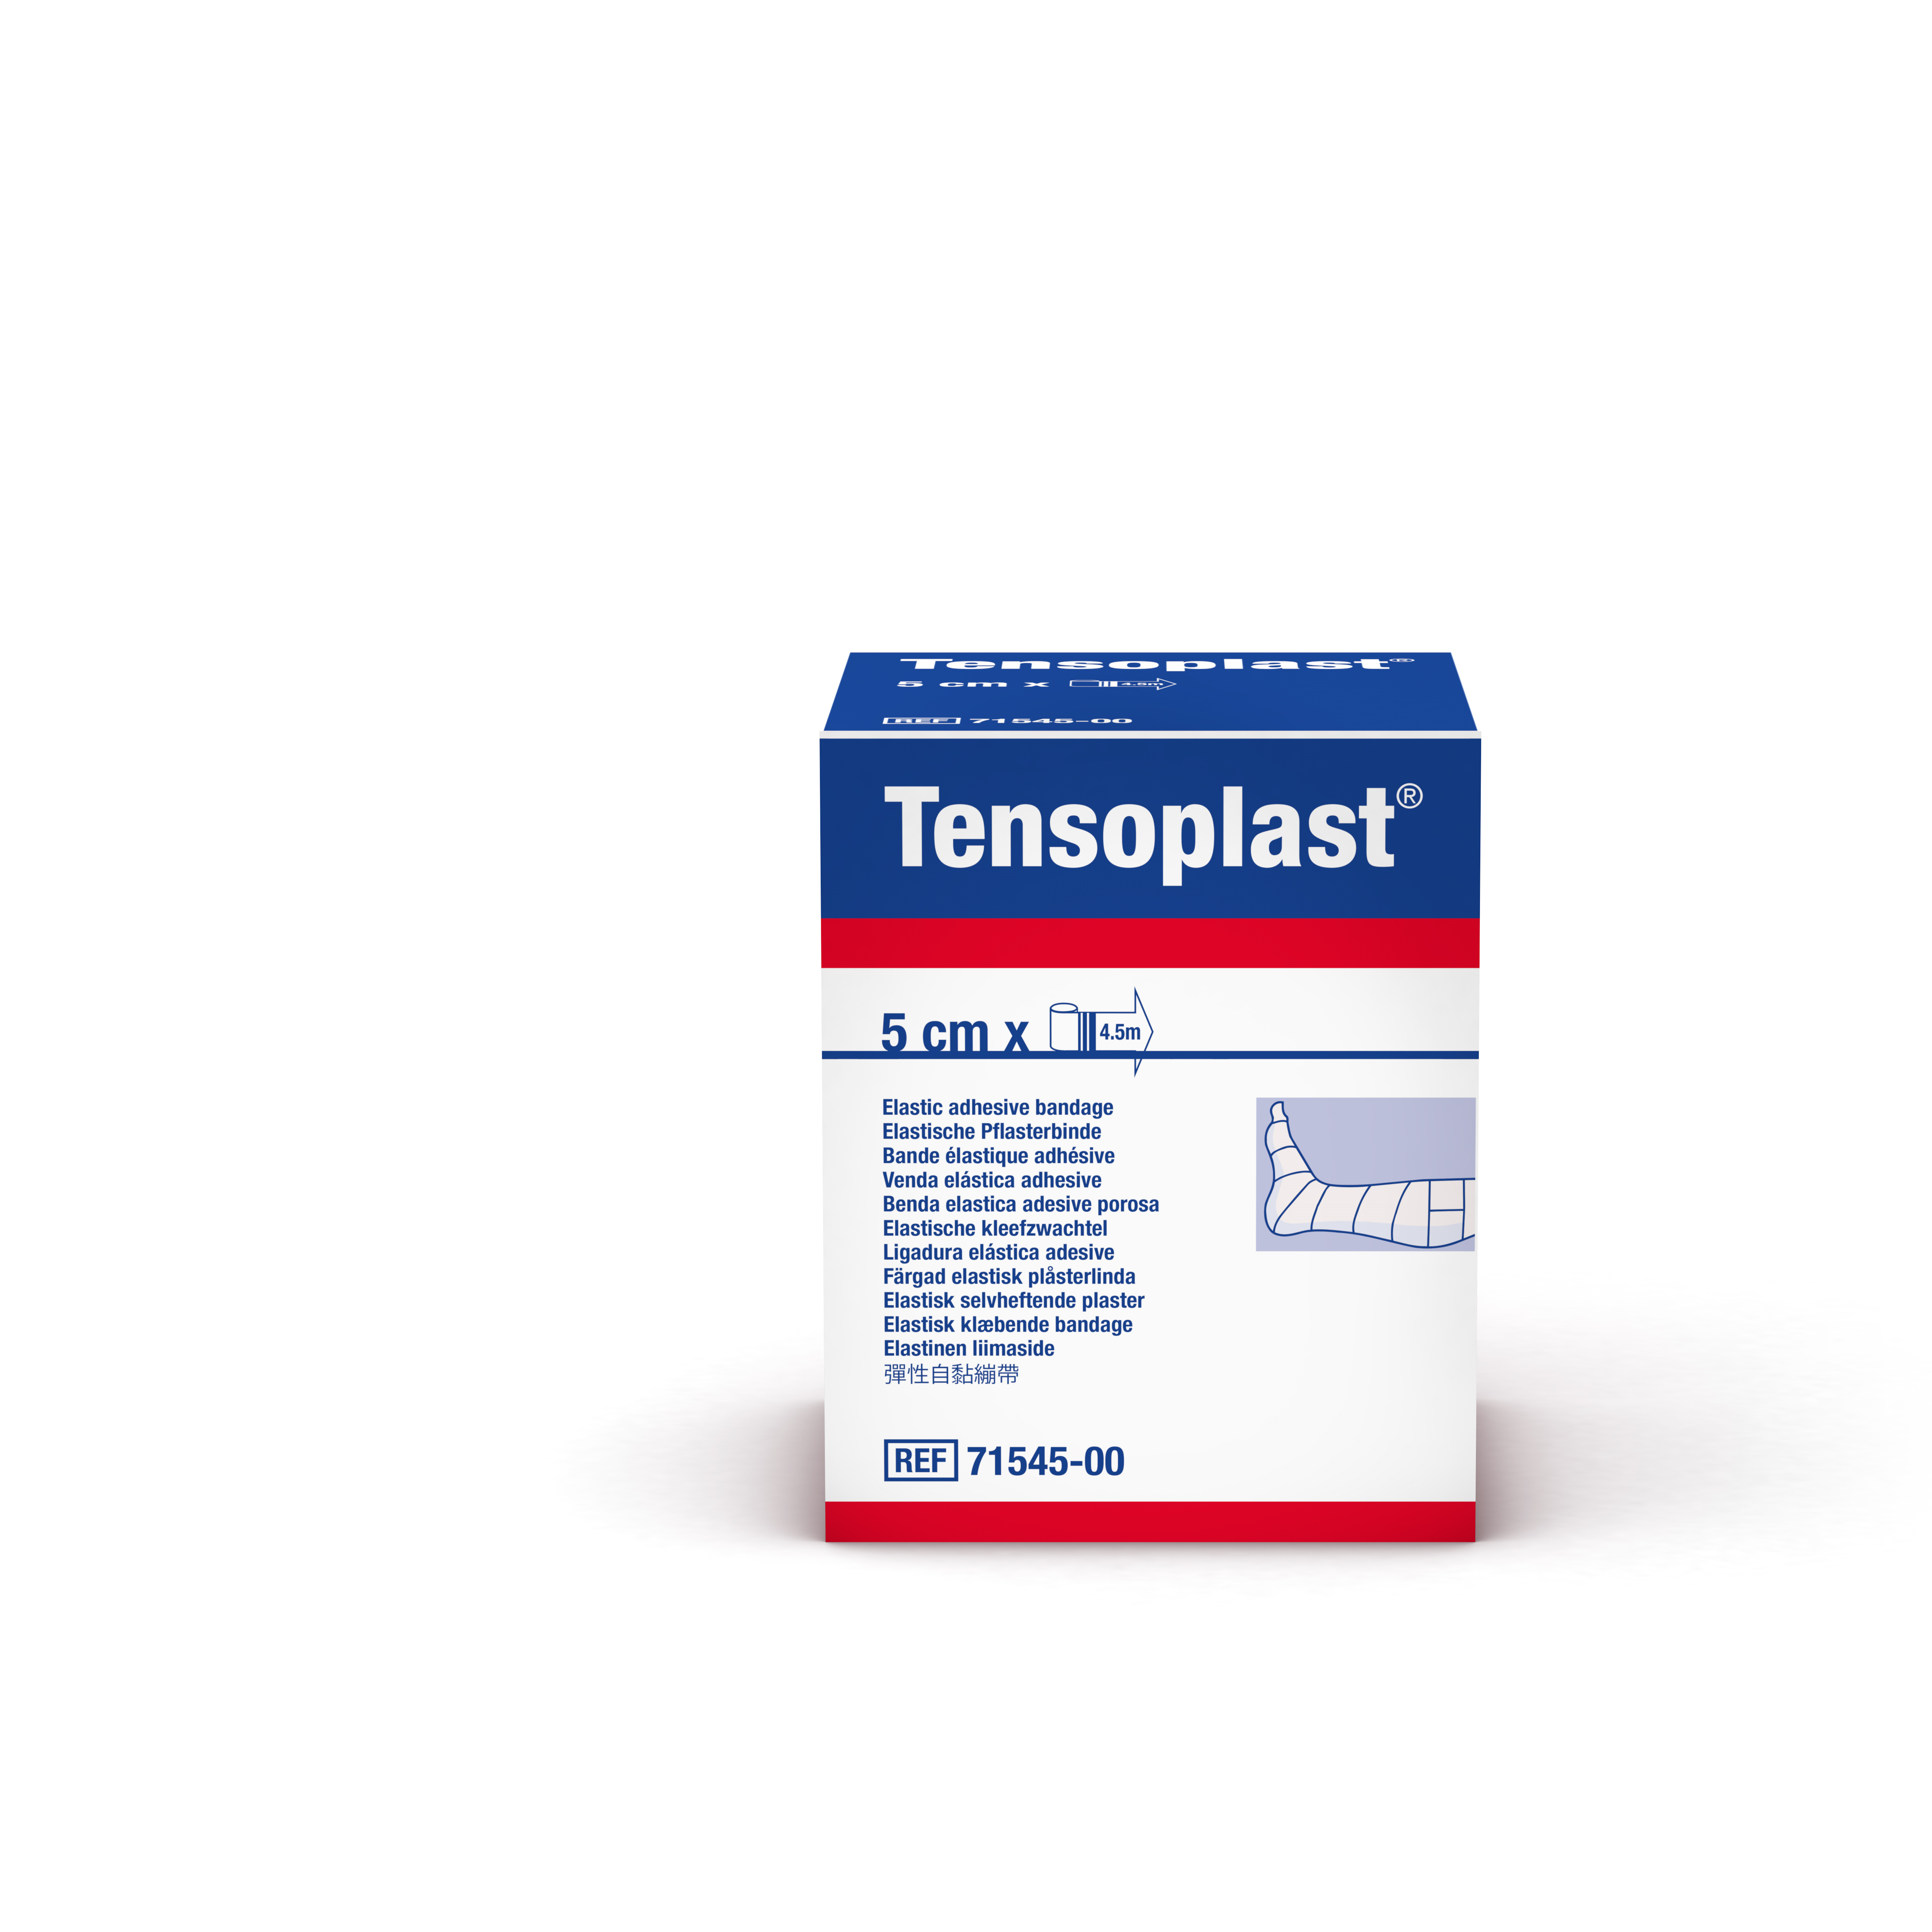 Tensoplast® elastische kleefzwachtel